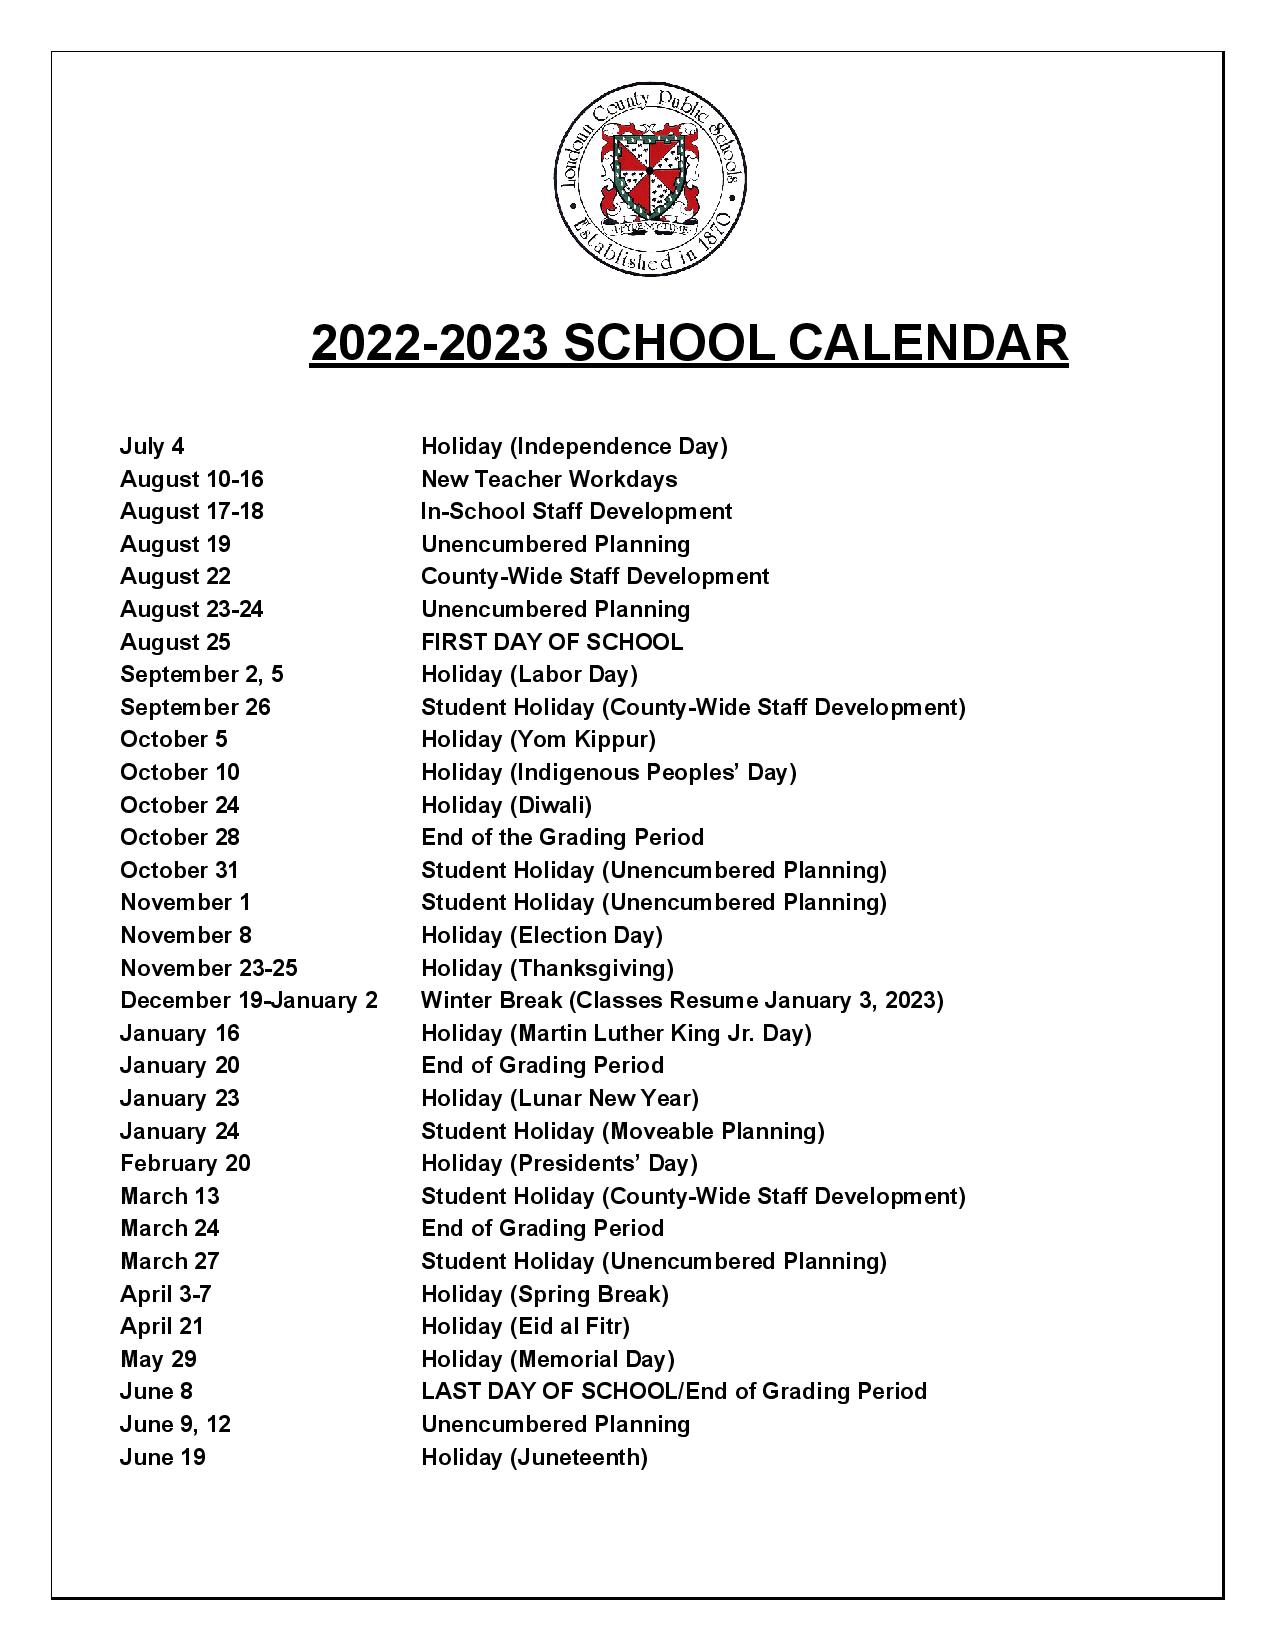 loudoun-county-public-schools-calendar-2022-2023